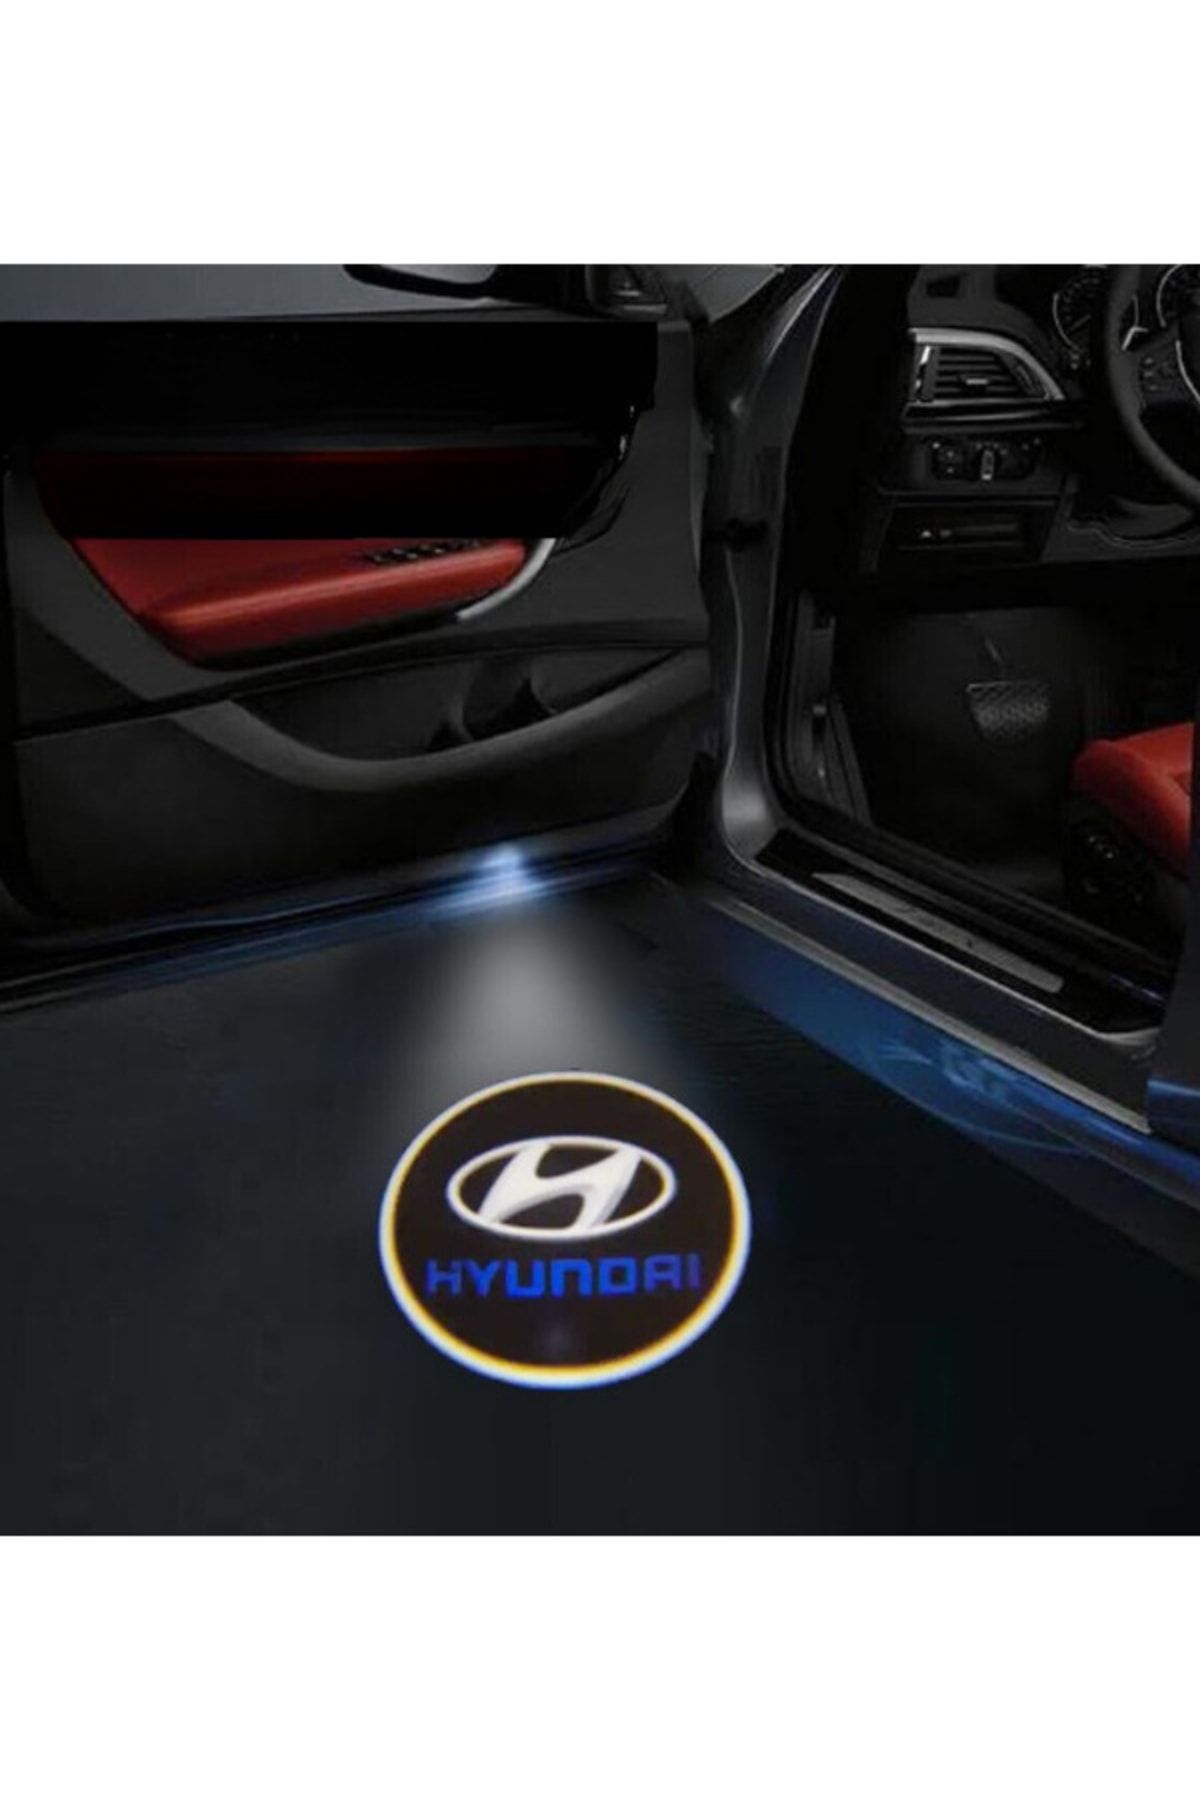 Unichrome Hyundai Logolu Kapı Altı Logo Lamba Pilli Sensörlü Kolay Montaj